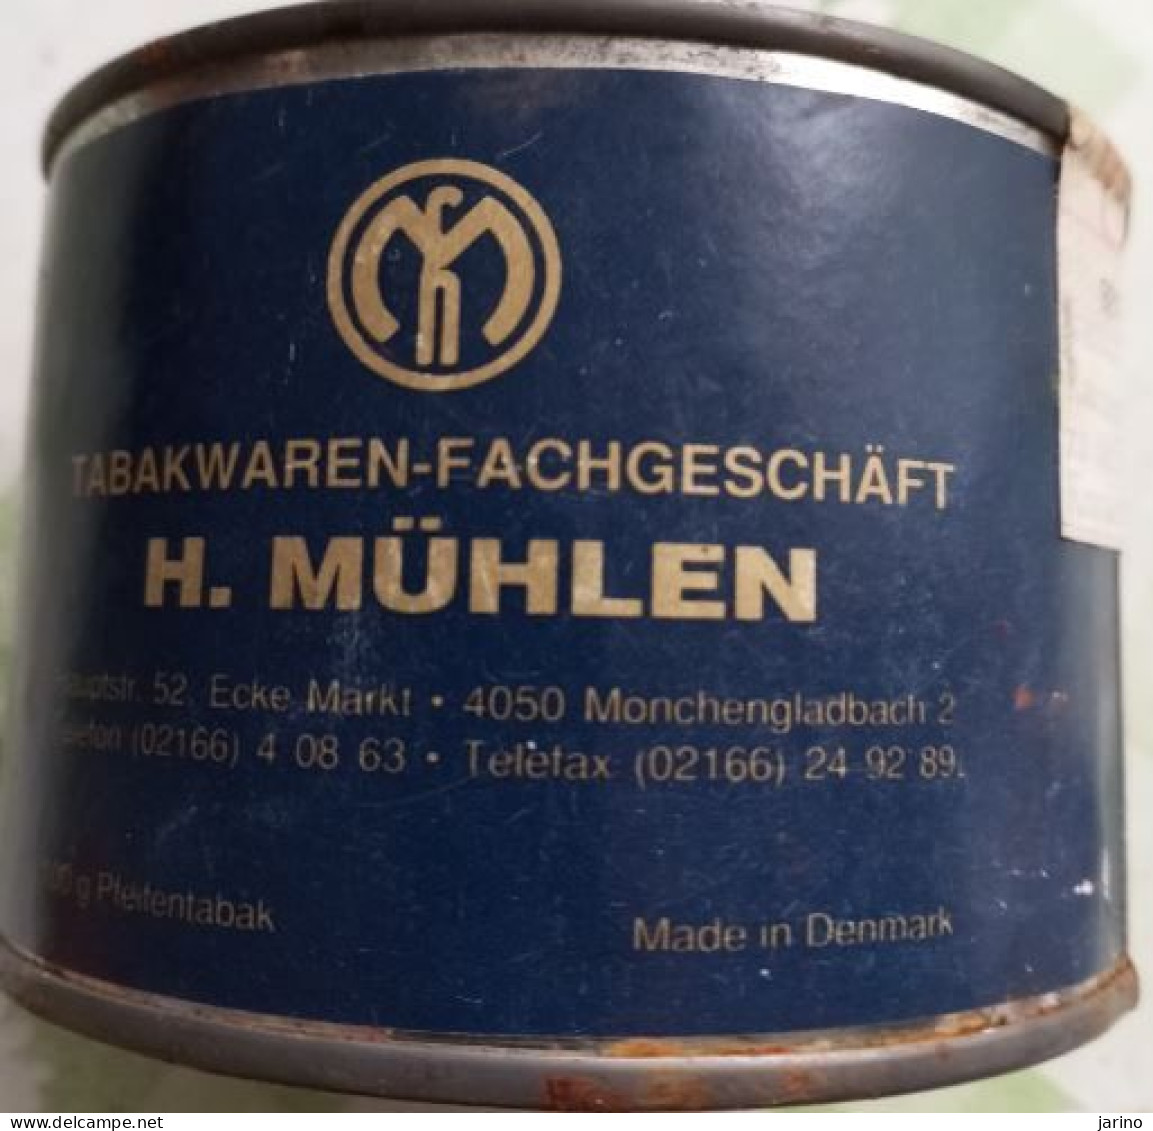 Ancient Empty Metal Tobacco Box Tabakwaren-Fachgeschäft H. MüHLEN, Made In Denmark, Average 10 Cm - Boites à Tabac Vides